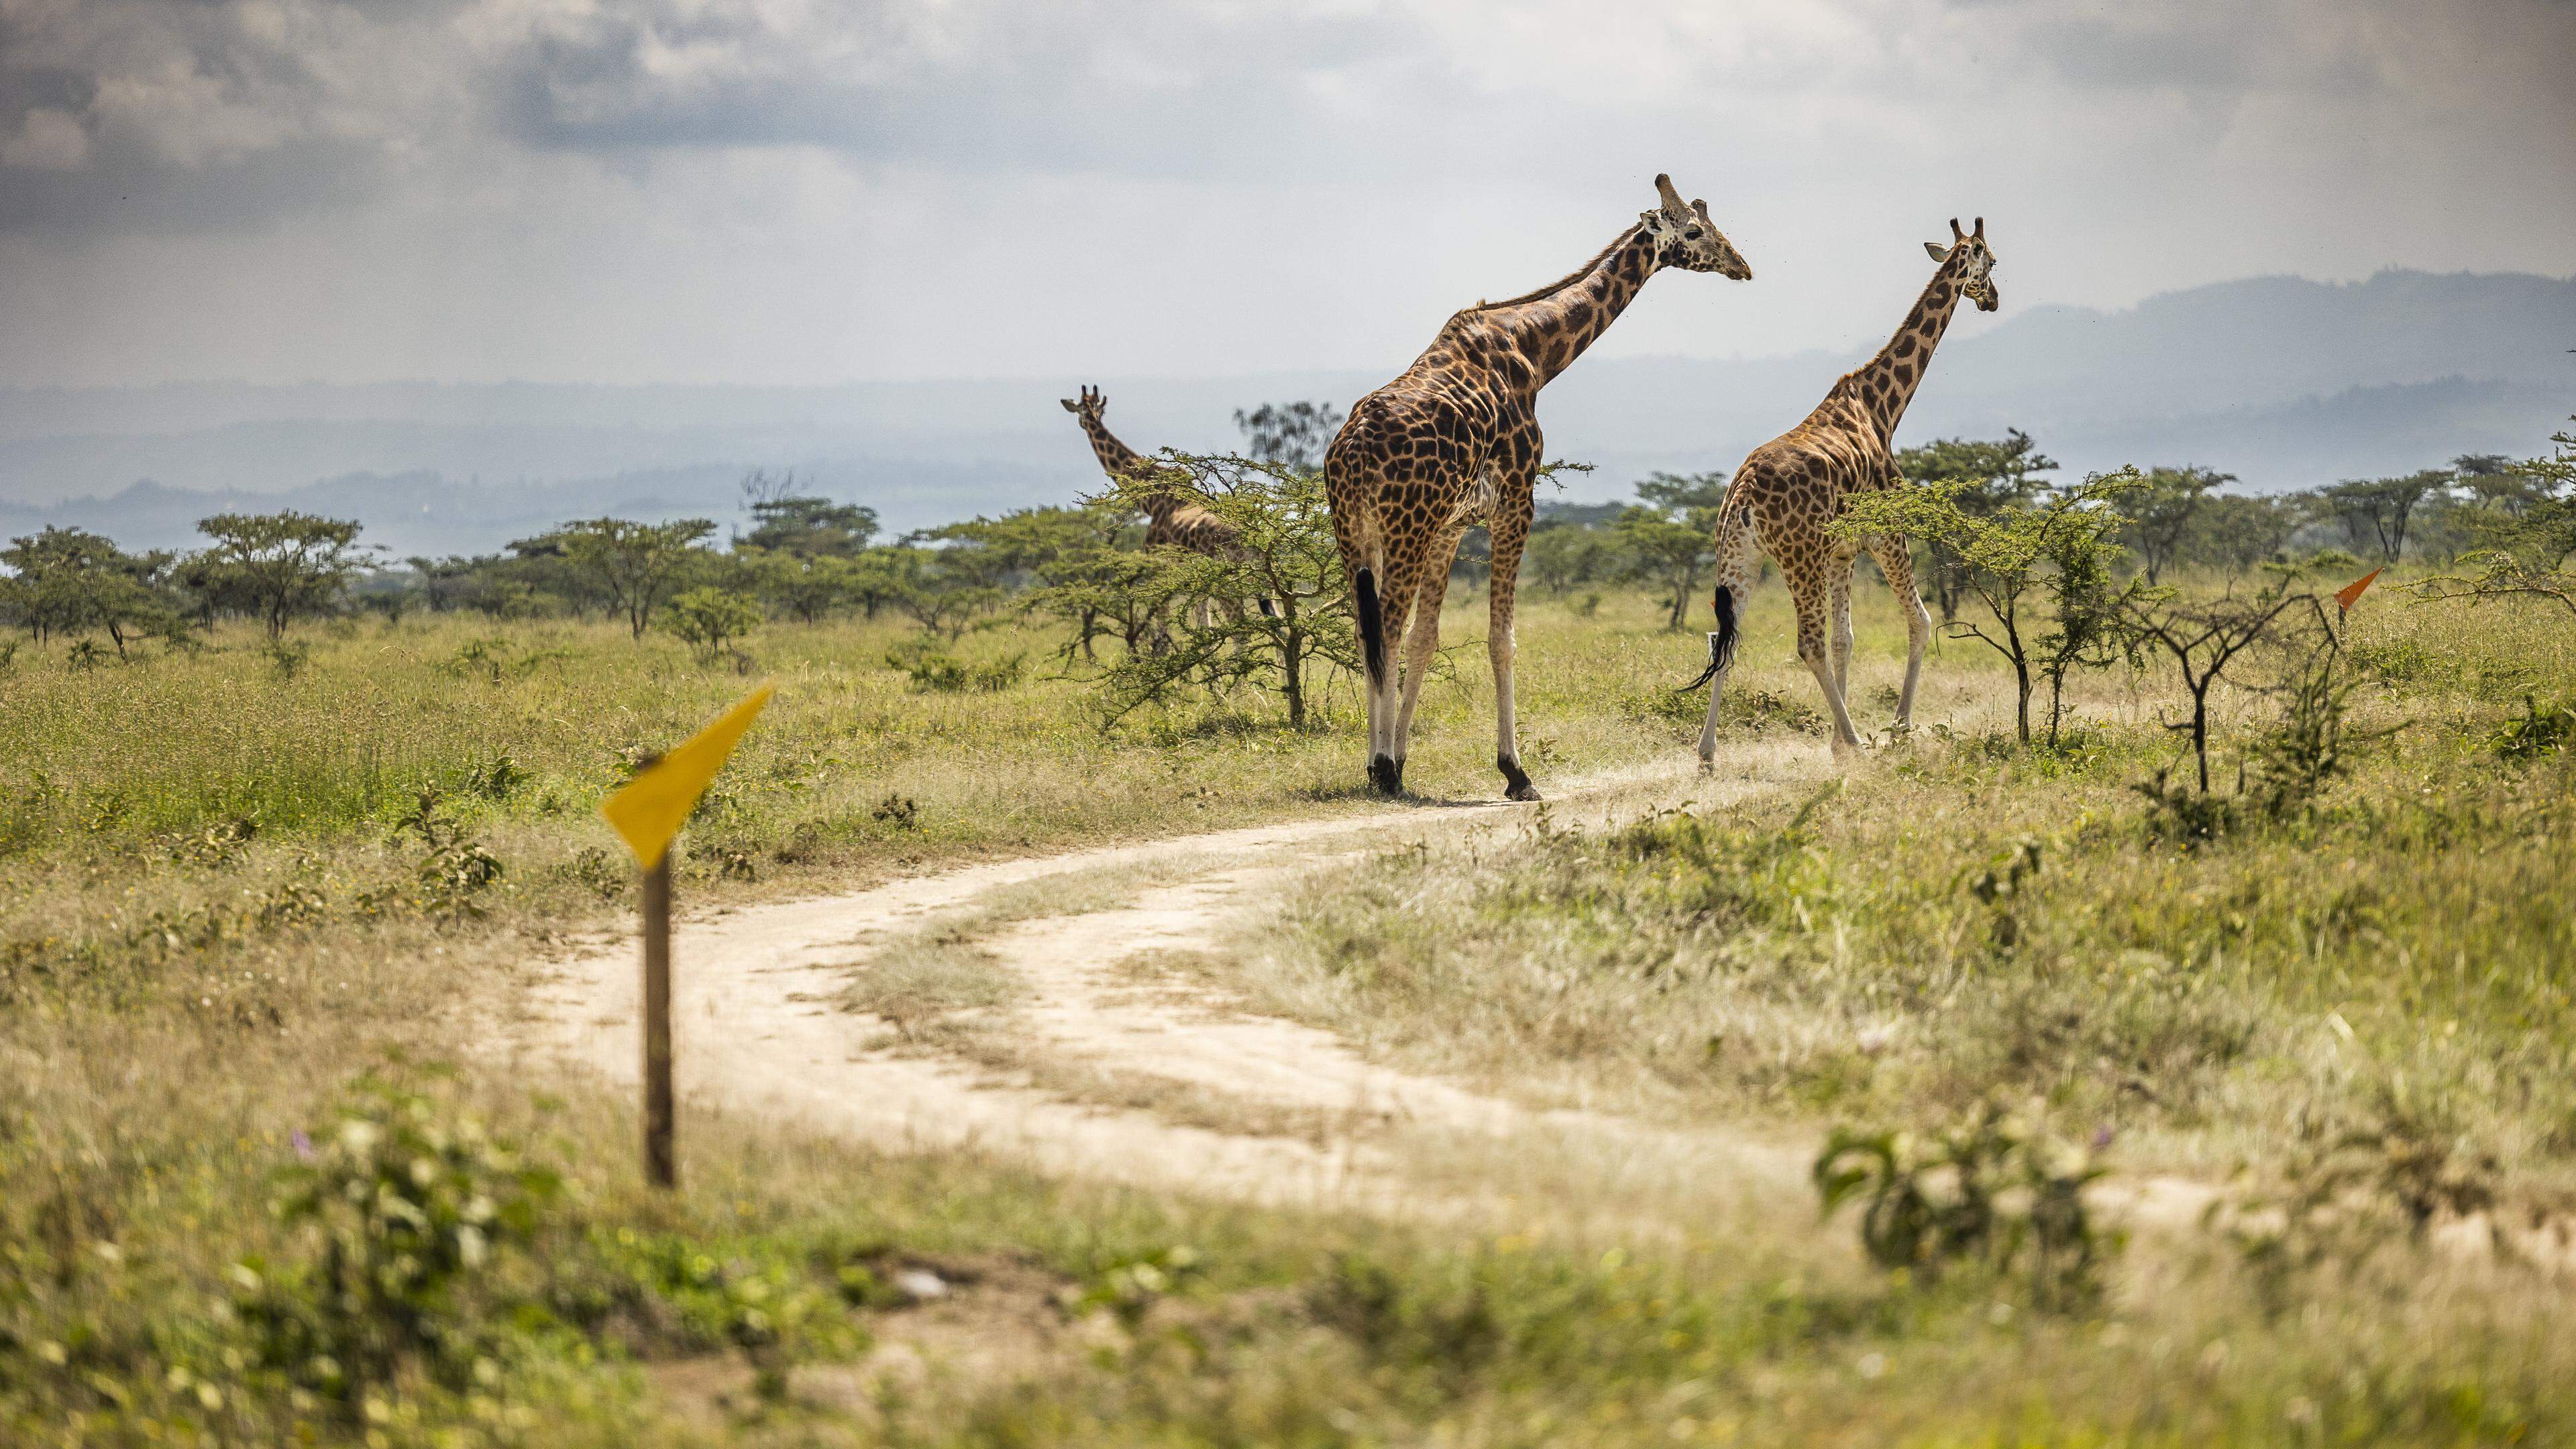 Outre les girafes, des zèbres ou des hippopotames pourraient également se balader sur et en dehors du parcours.